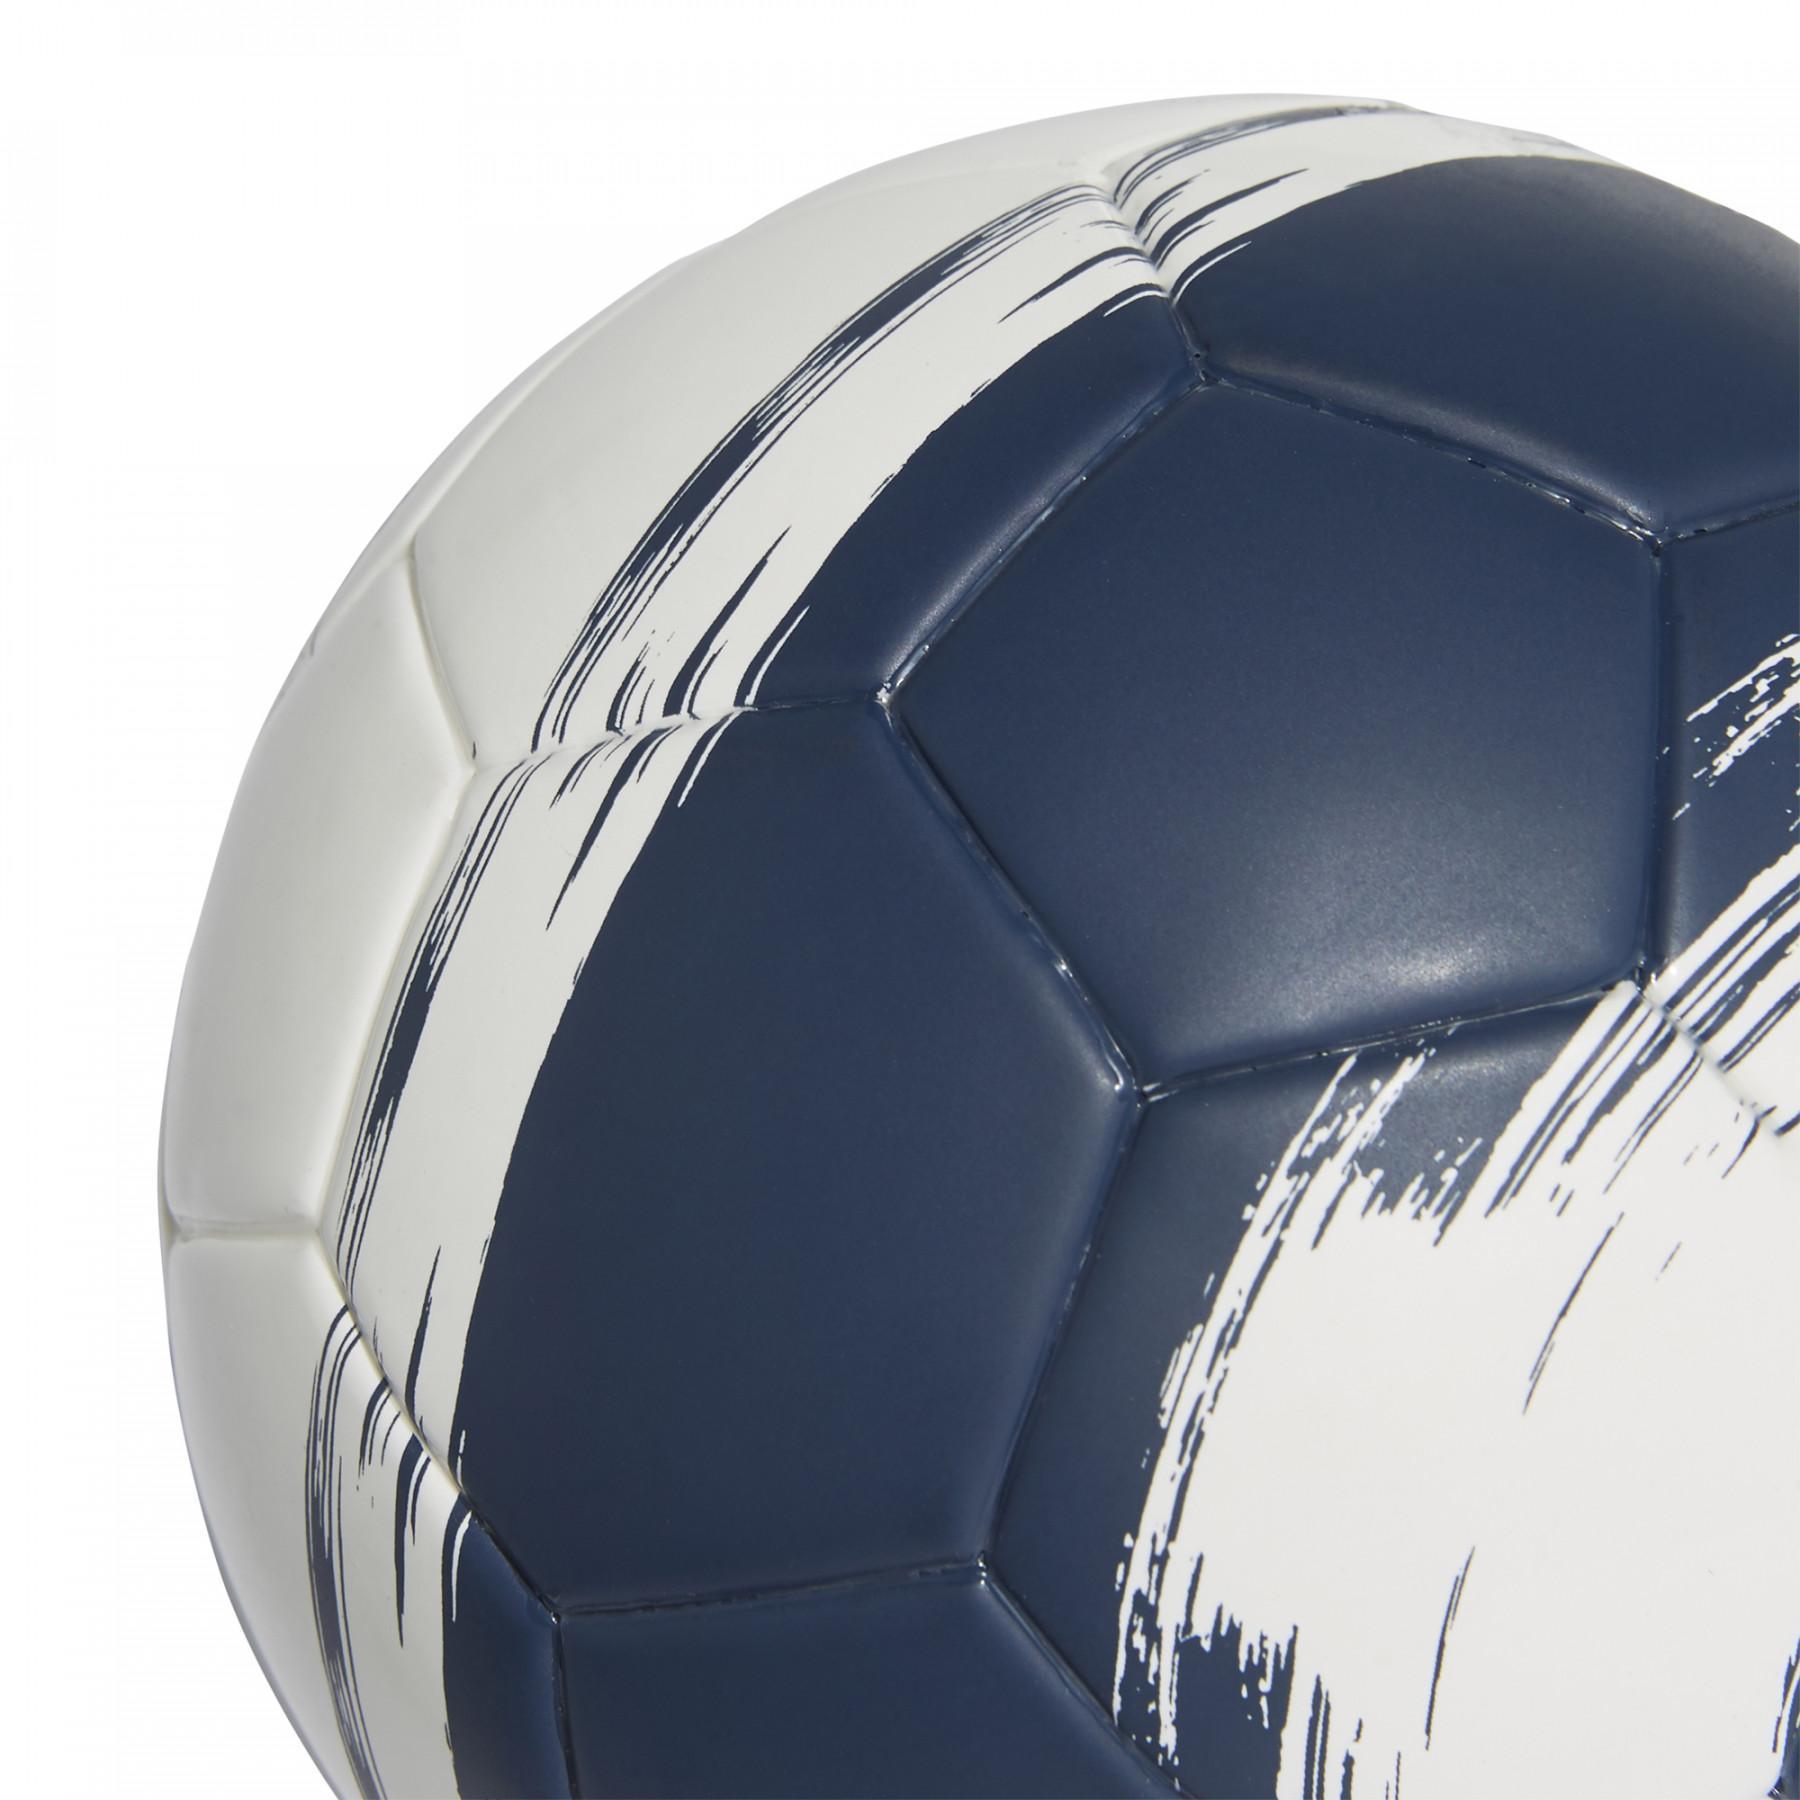 Balon adidas Mini Messi